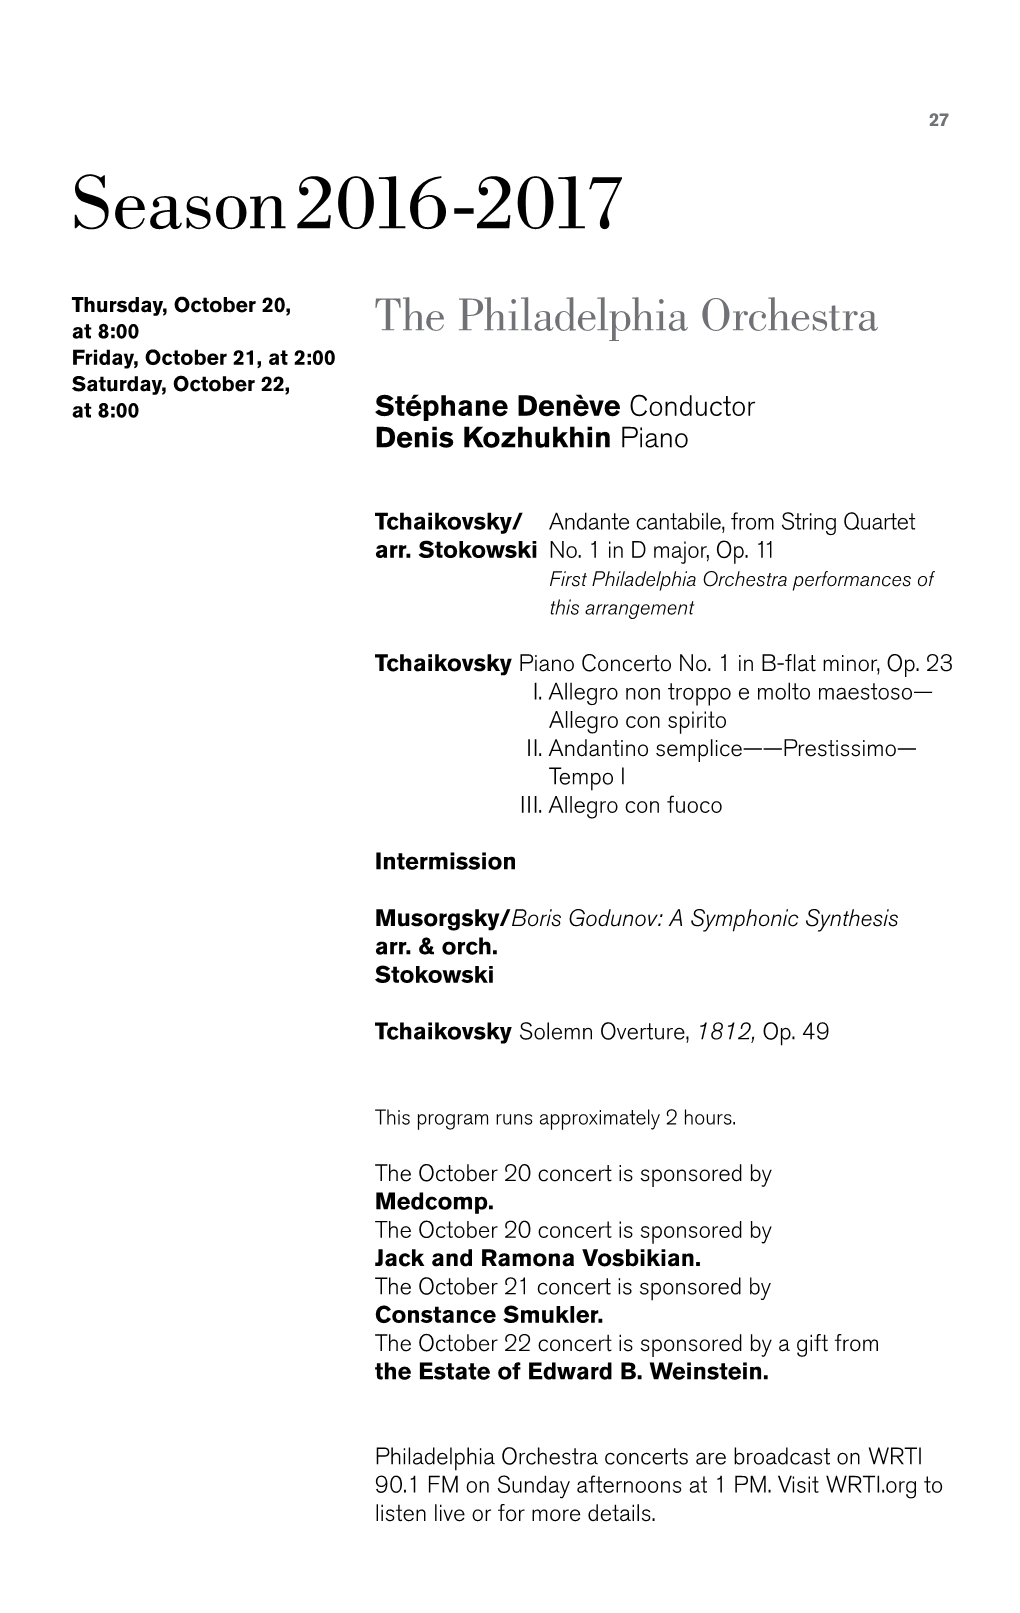 1812 Overture Symphony No